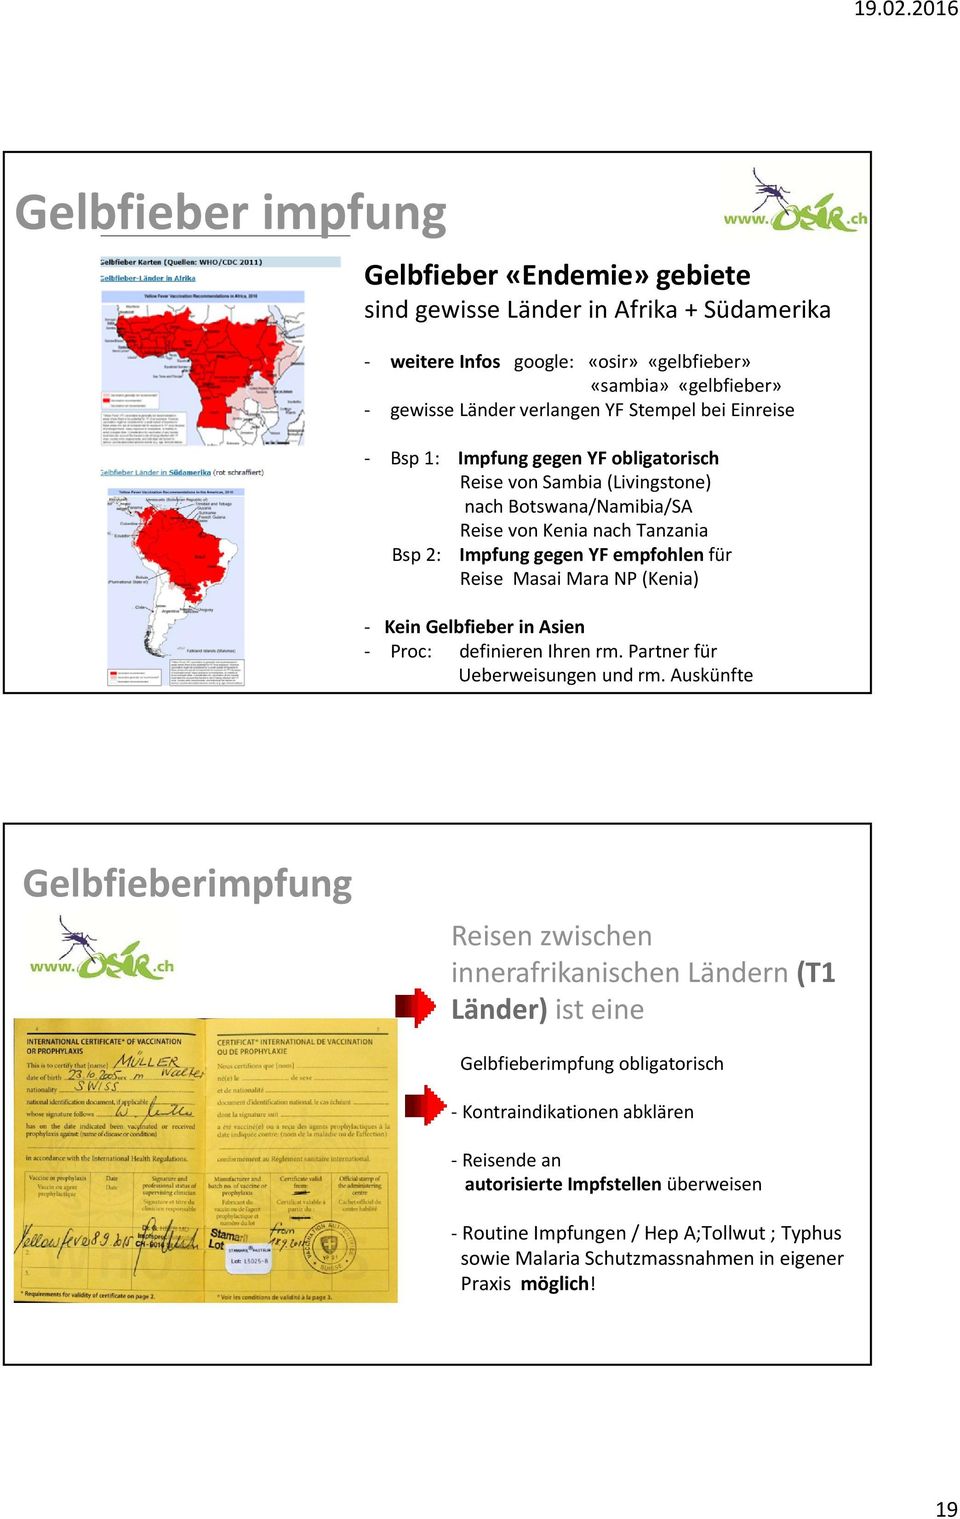 (Kenia) Kein Gelbfieber in Asien Proc: definieren Ihren rm. Partner für Ueberweisungen und rm.